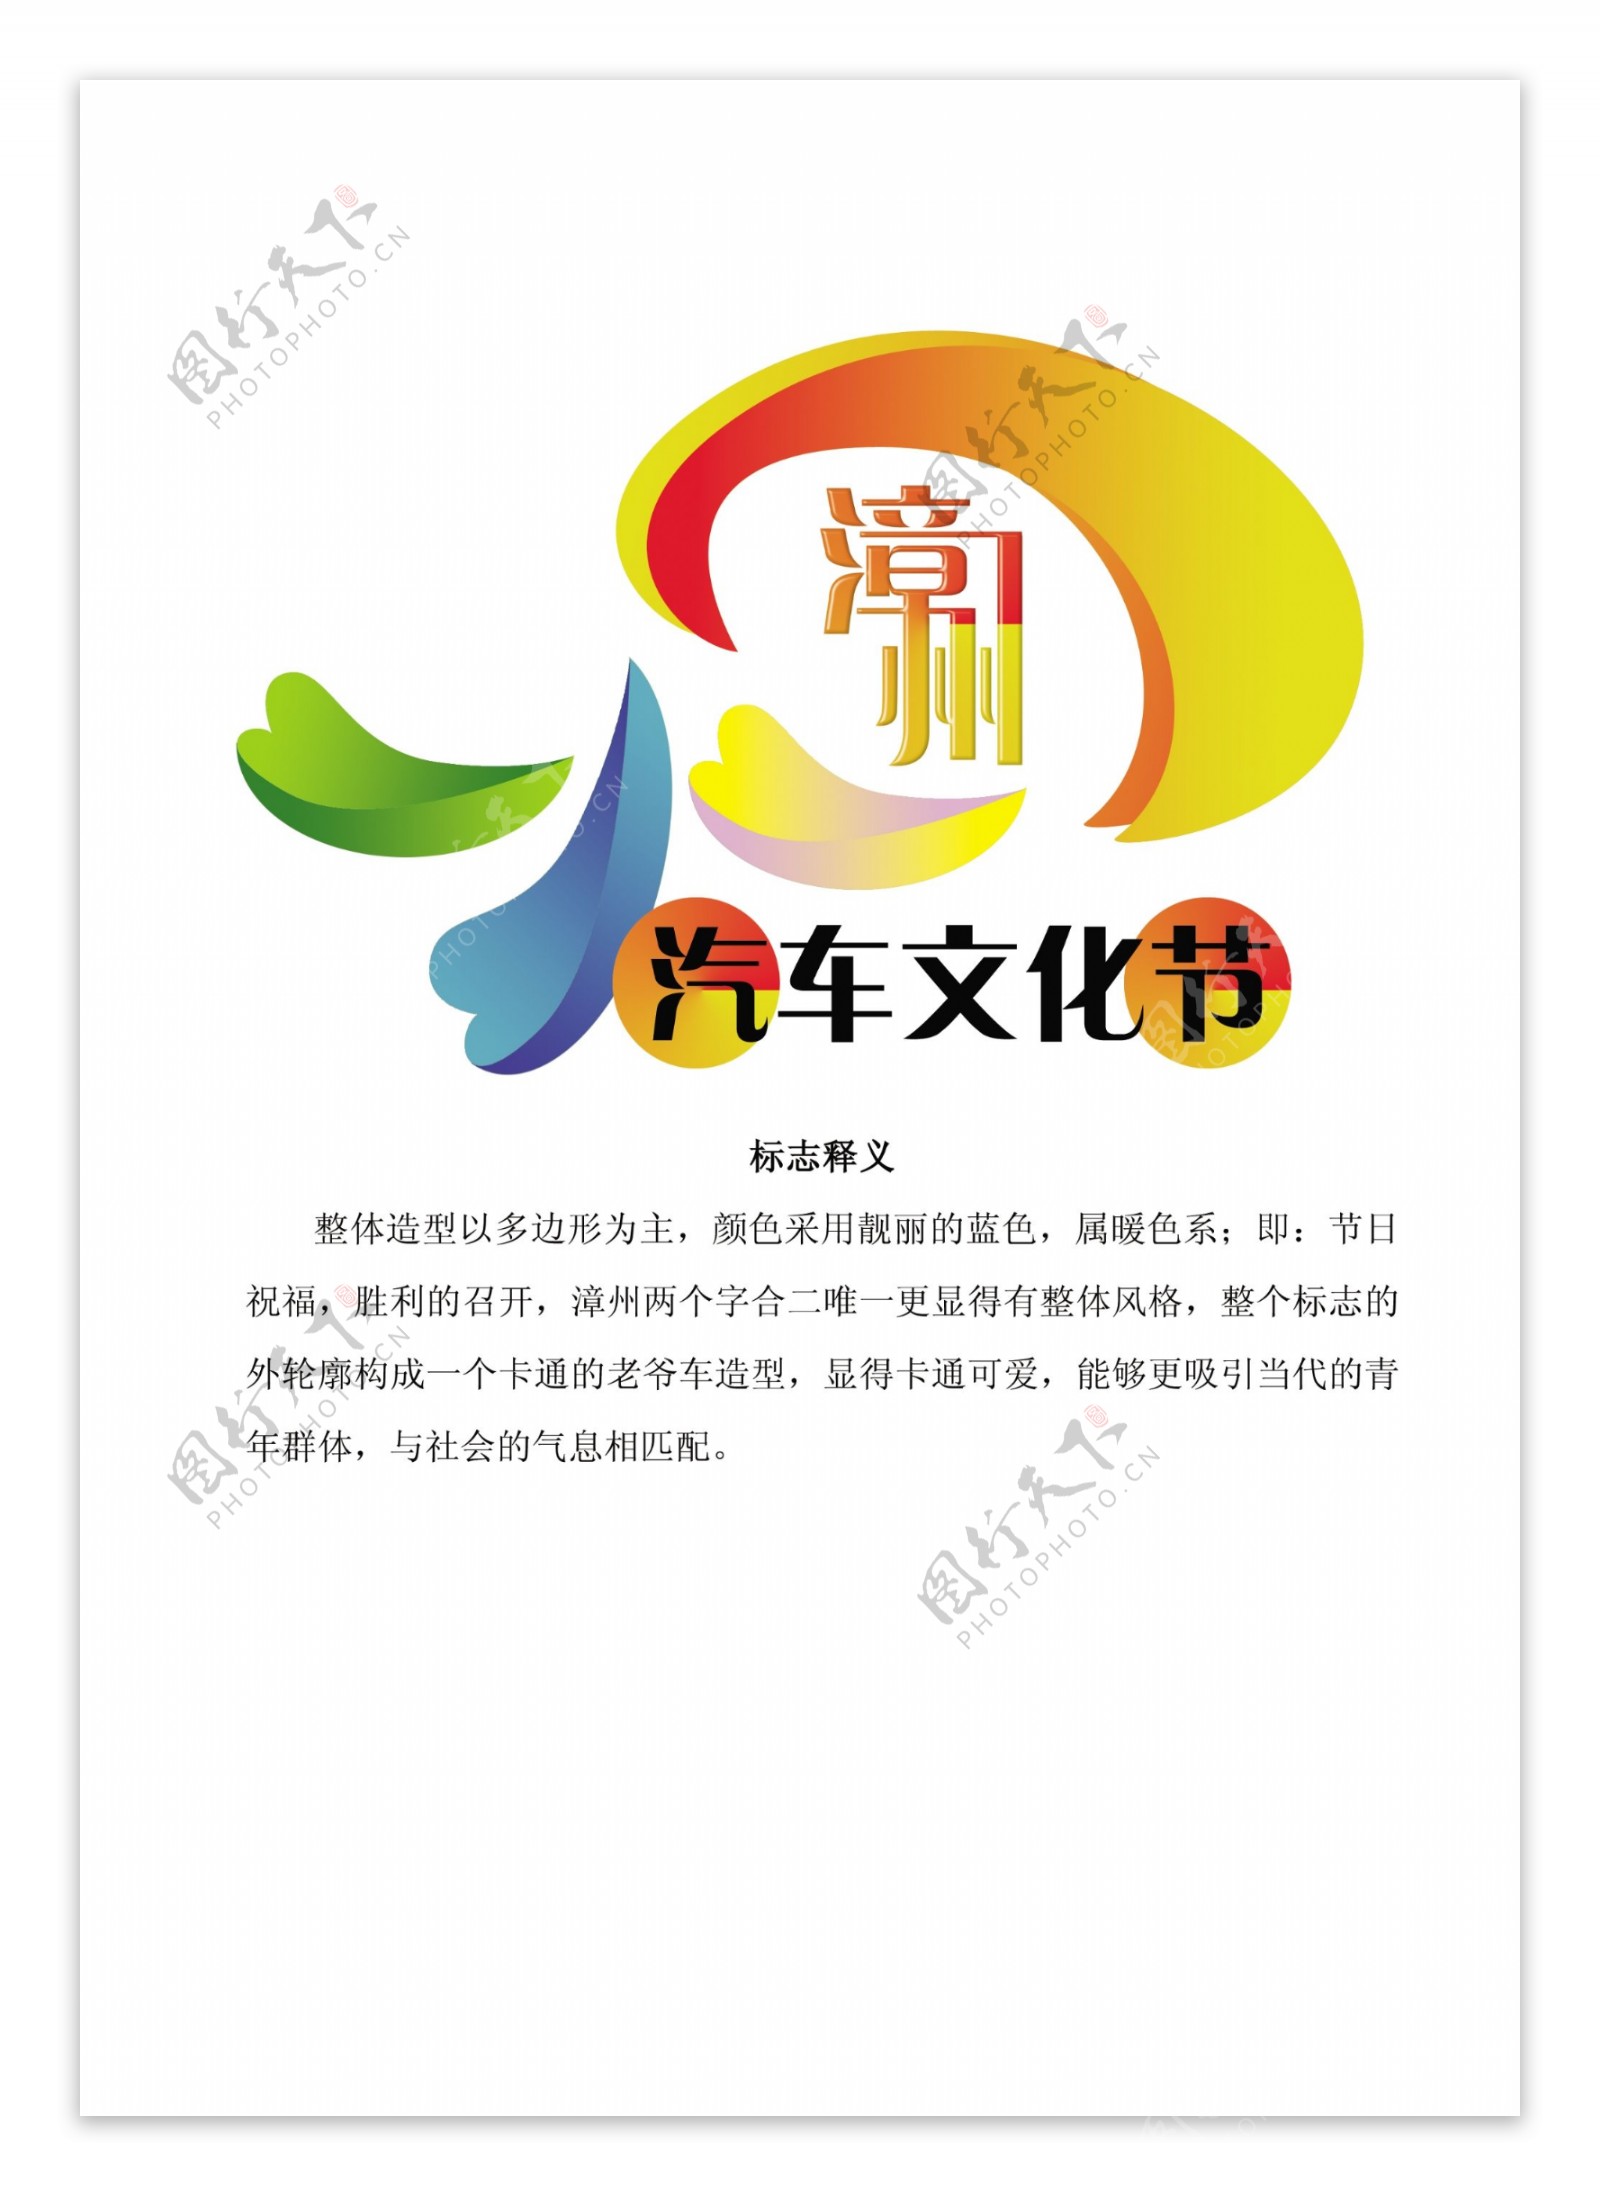 汽车文化节logo图片